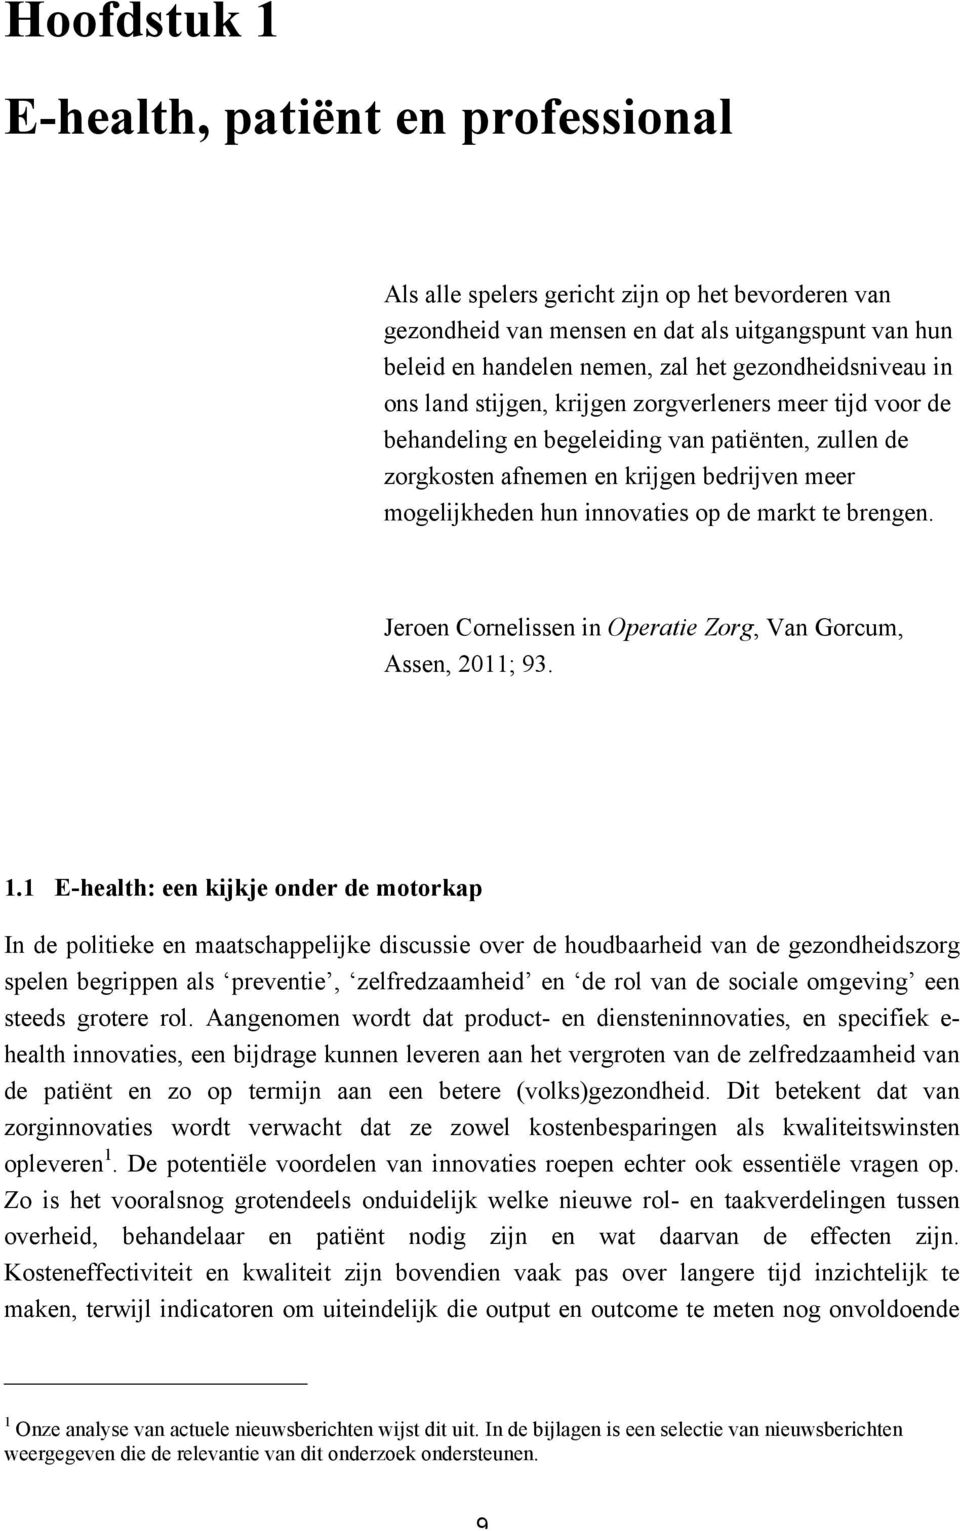 innovaties op de markt te brengen. Jeroen Cornelissen in Operatie Zorg, Van Gorcum, Assen, 2011; 93. 1.